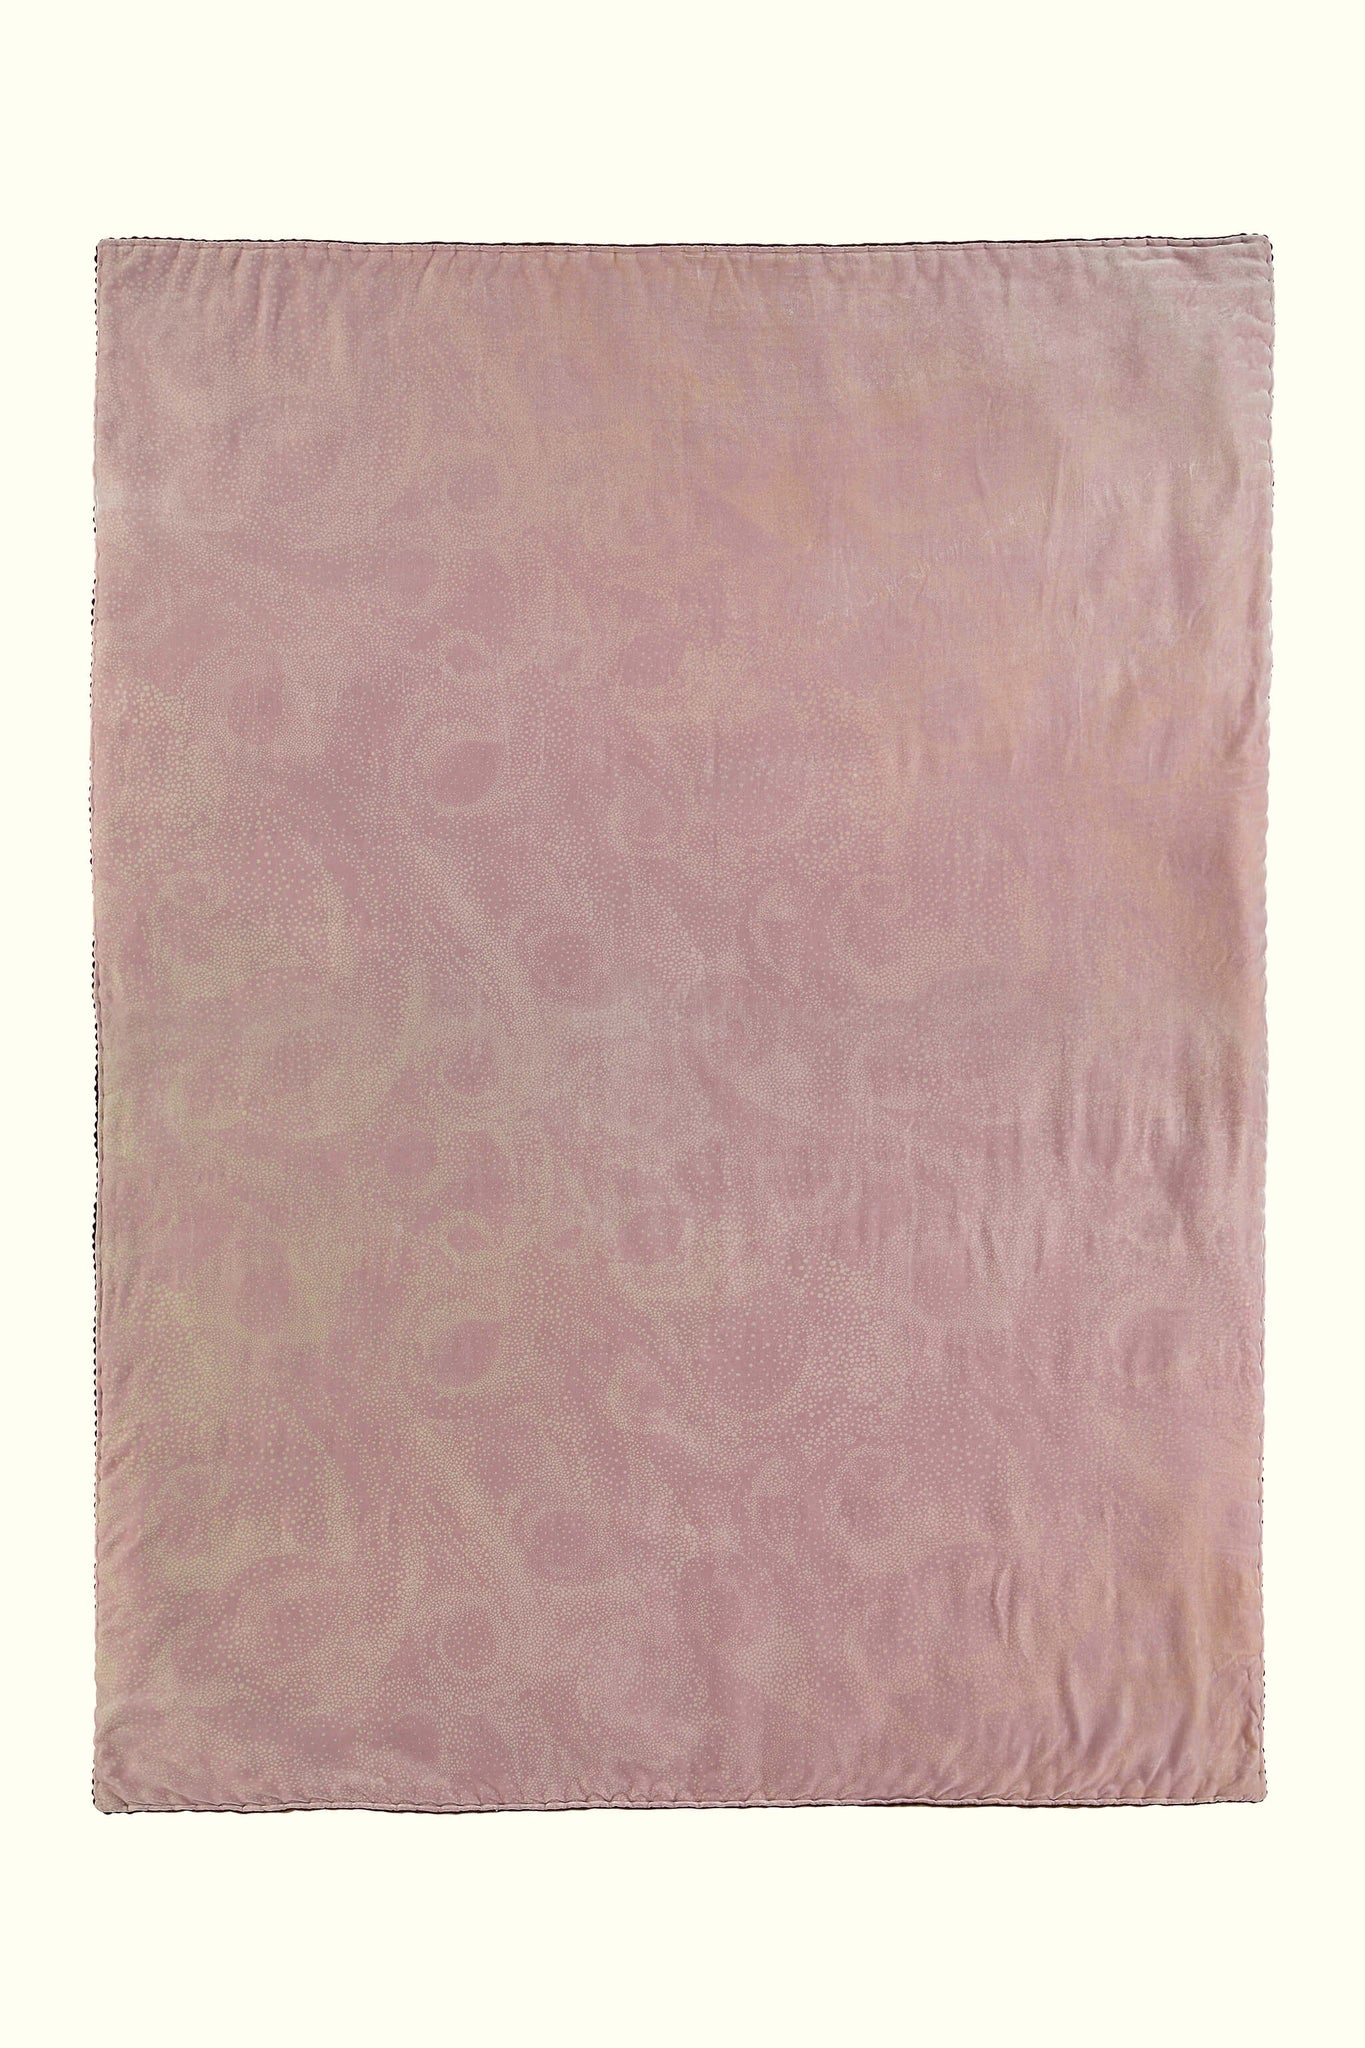 Aurora design dusty pink silk velvet throw full size by GvE&Co (Georgina von Etzdorf)